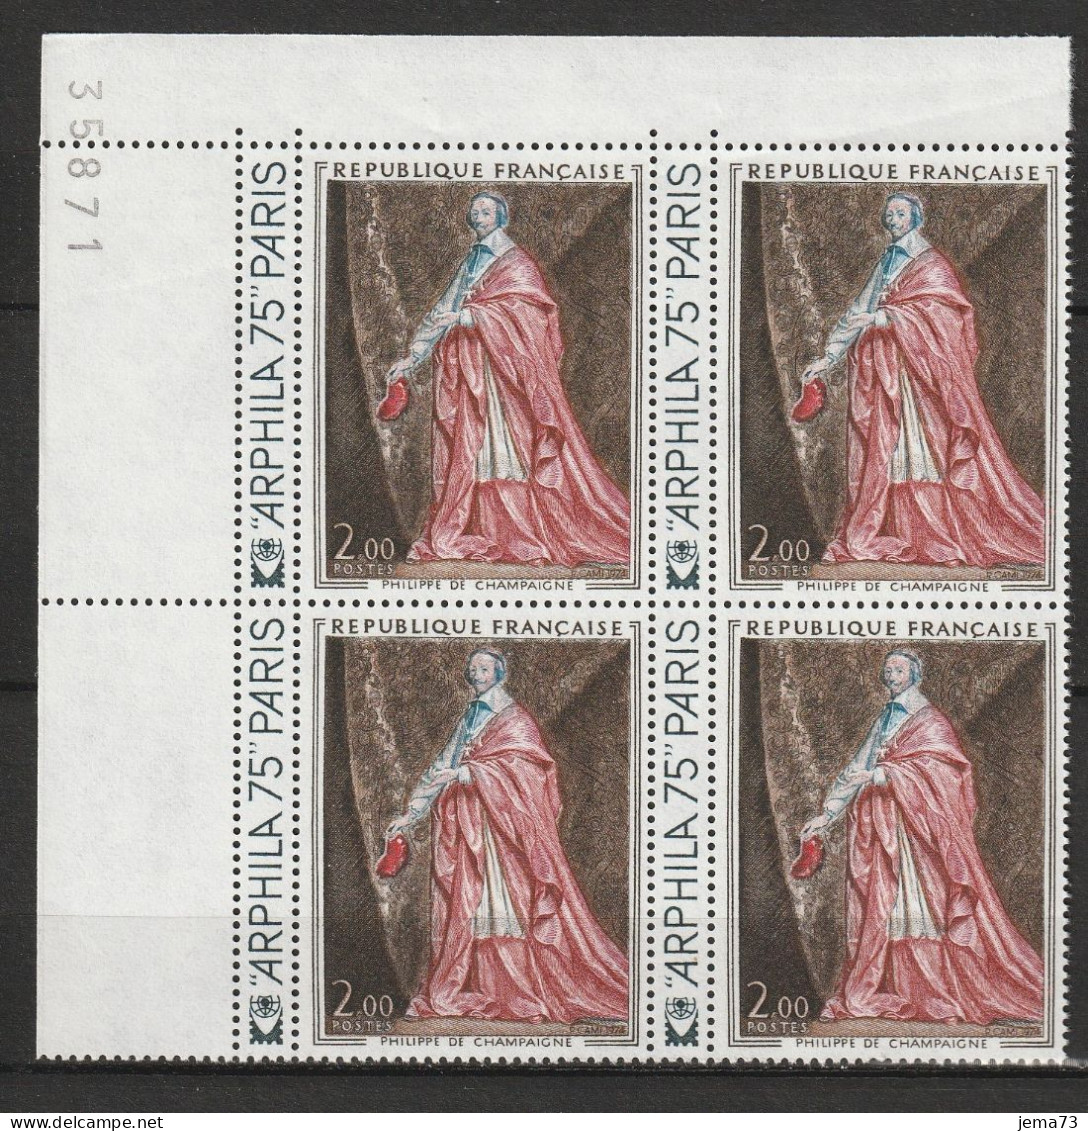 N° 1766 Ieuvre D'Art:Philippe De Champaigne: Beau Bloc De 4 Timbres Neuf Impeccable, Beaux Timbres Neuf Impréccable - Unused Stamps